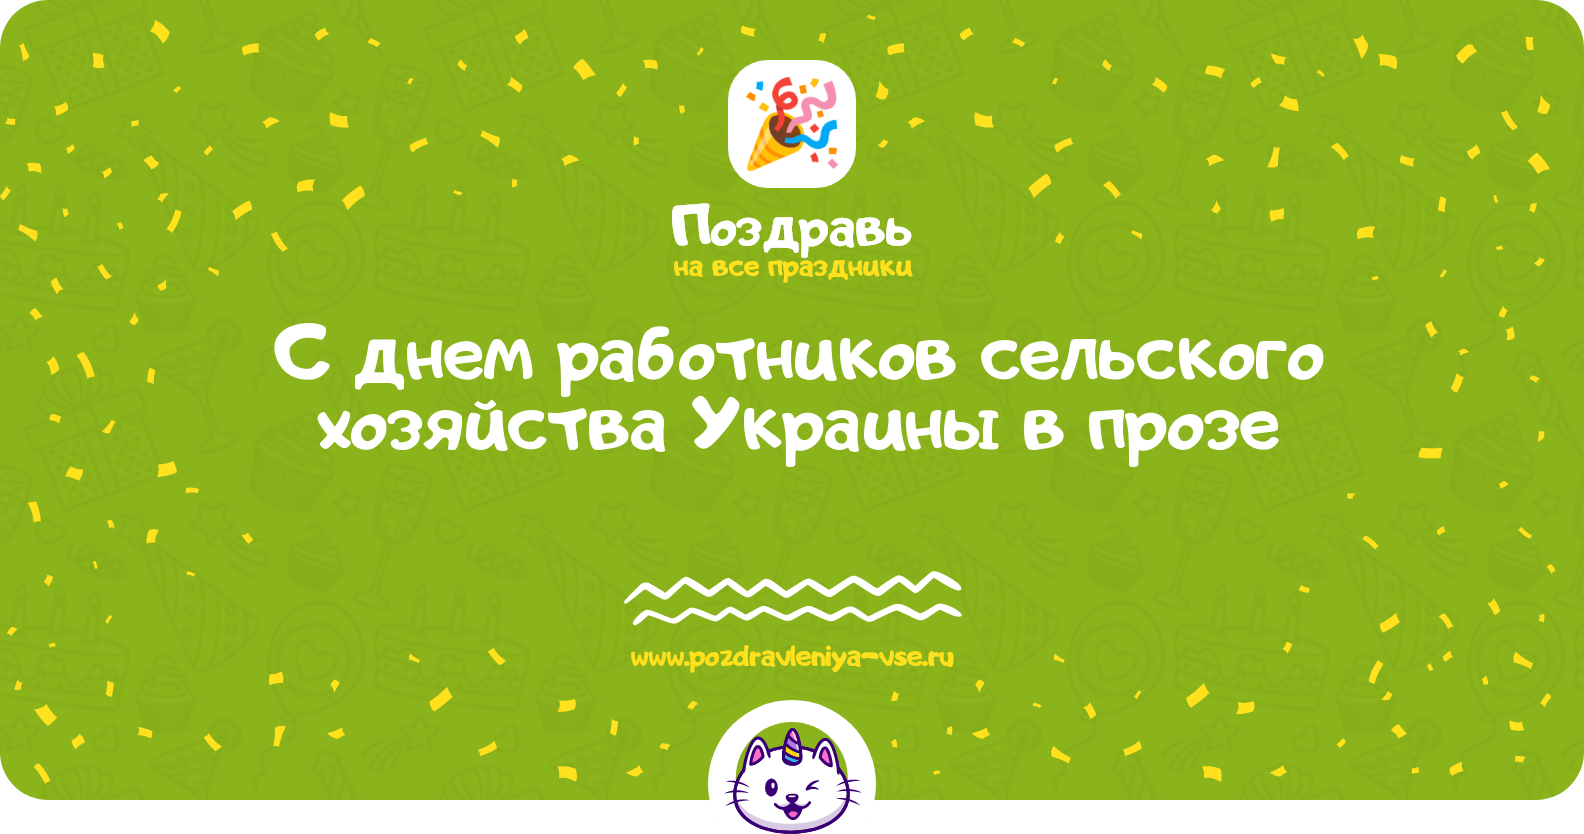 Поздравления с днем работников сельского хозяйства Украины в прозе